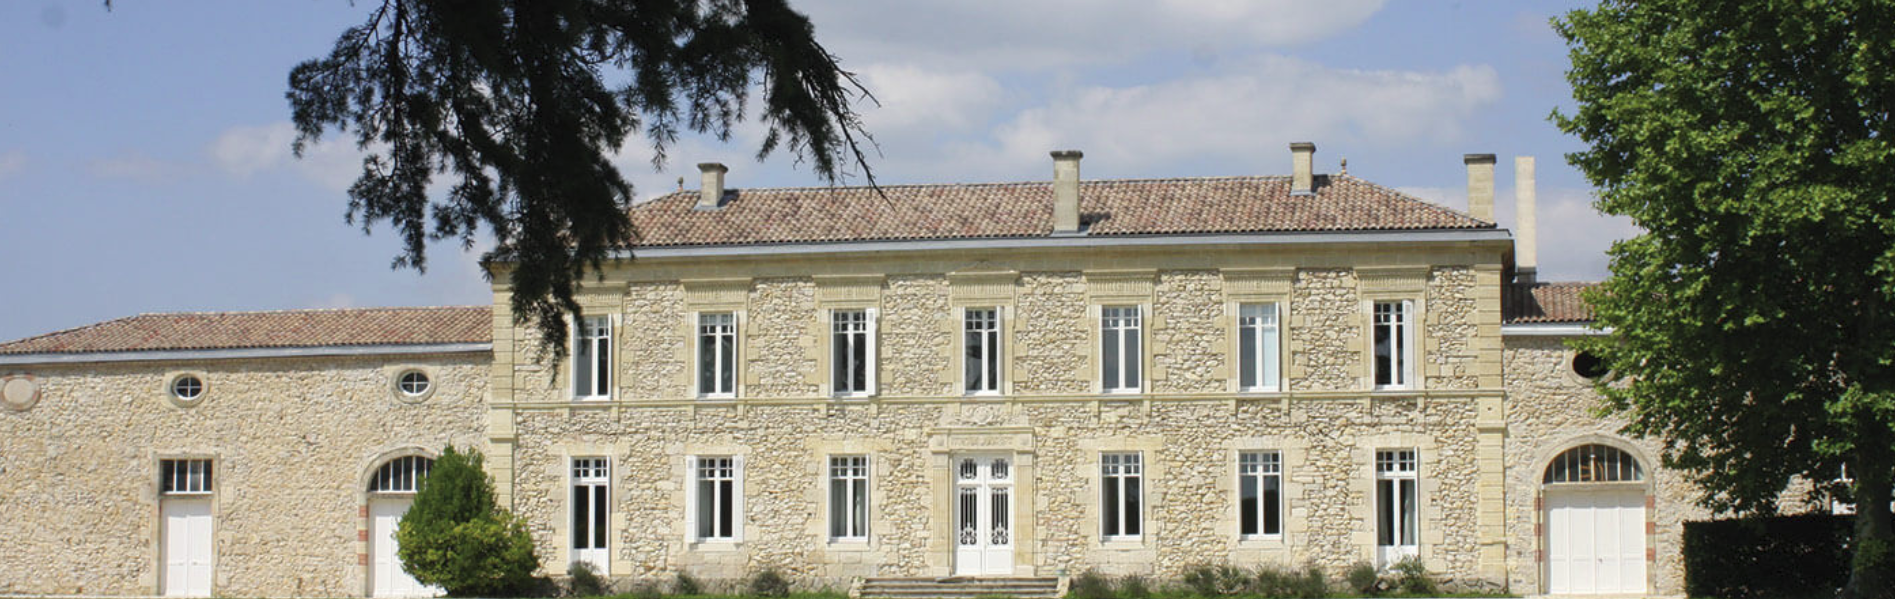 Chateau de Landiras Wine - Learn About & Buy Online